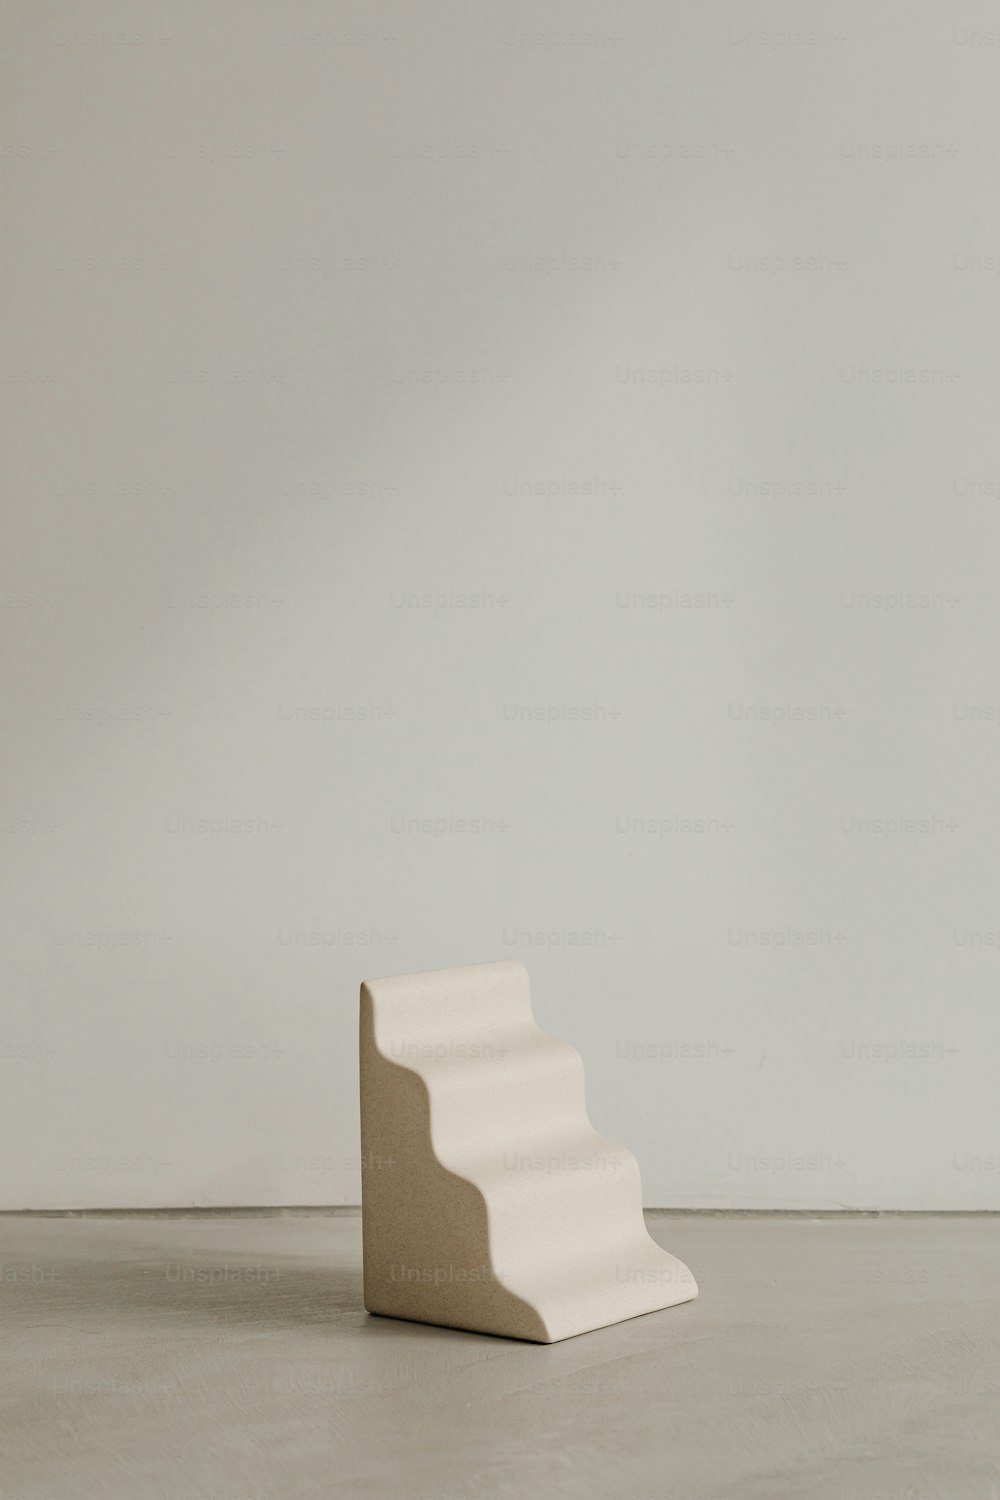 Una escultura blanca sentada encima de un piso de cemento